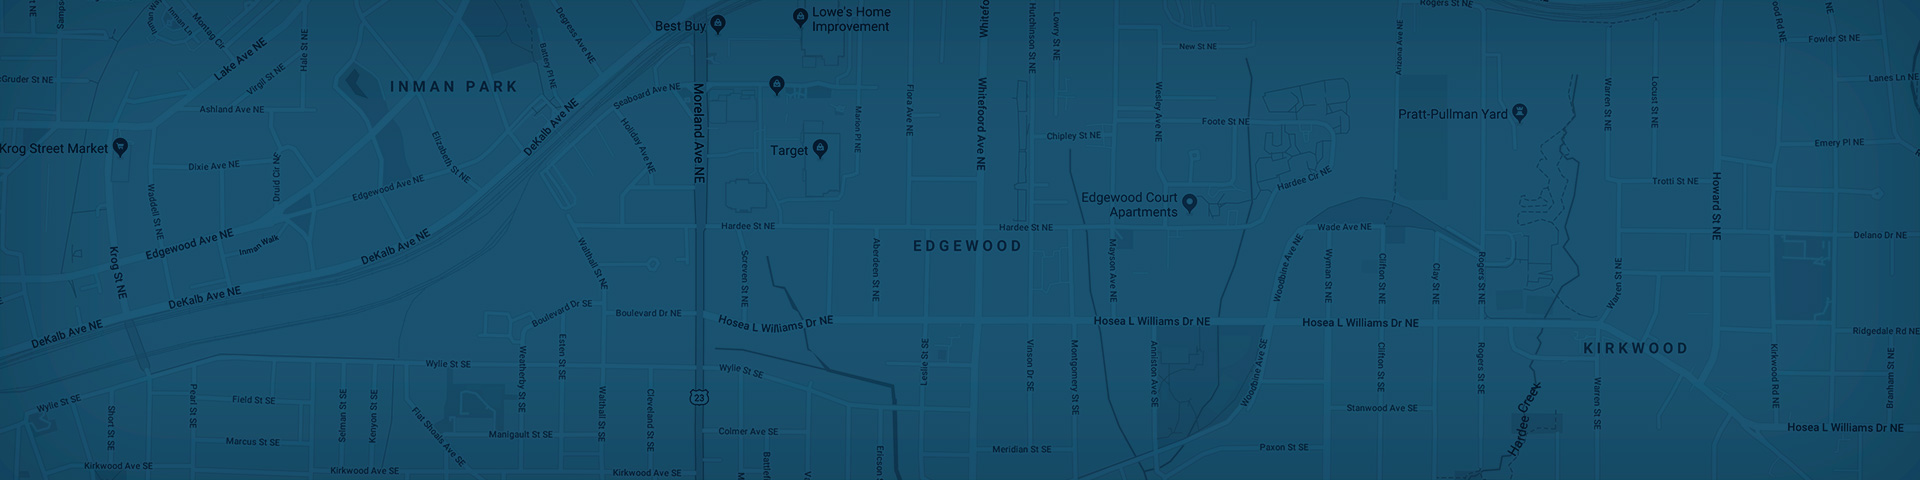 Edgewood Map